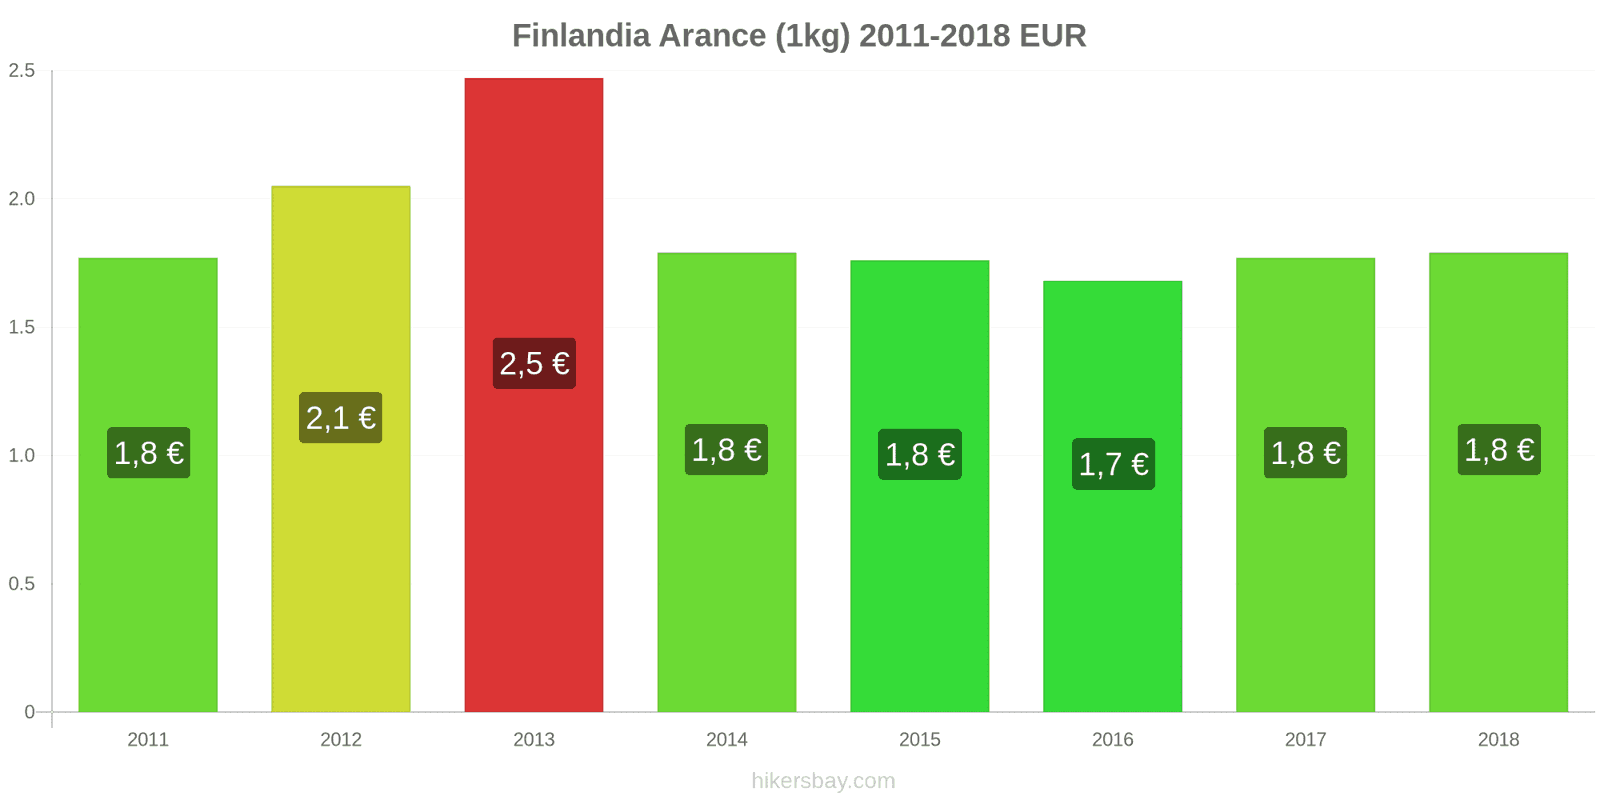 Finlandia cambi di prezzo Arance (1kg) hikersbay.com